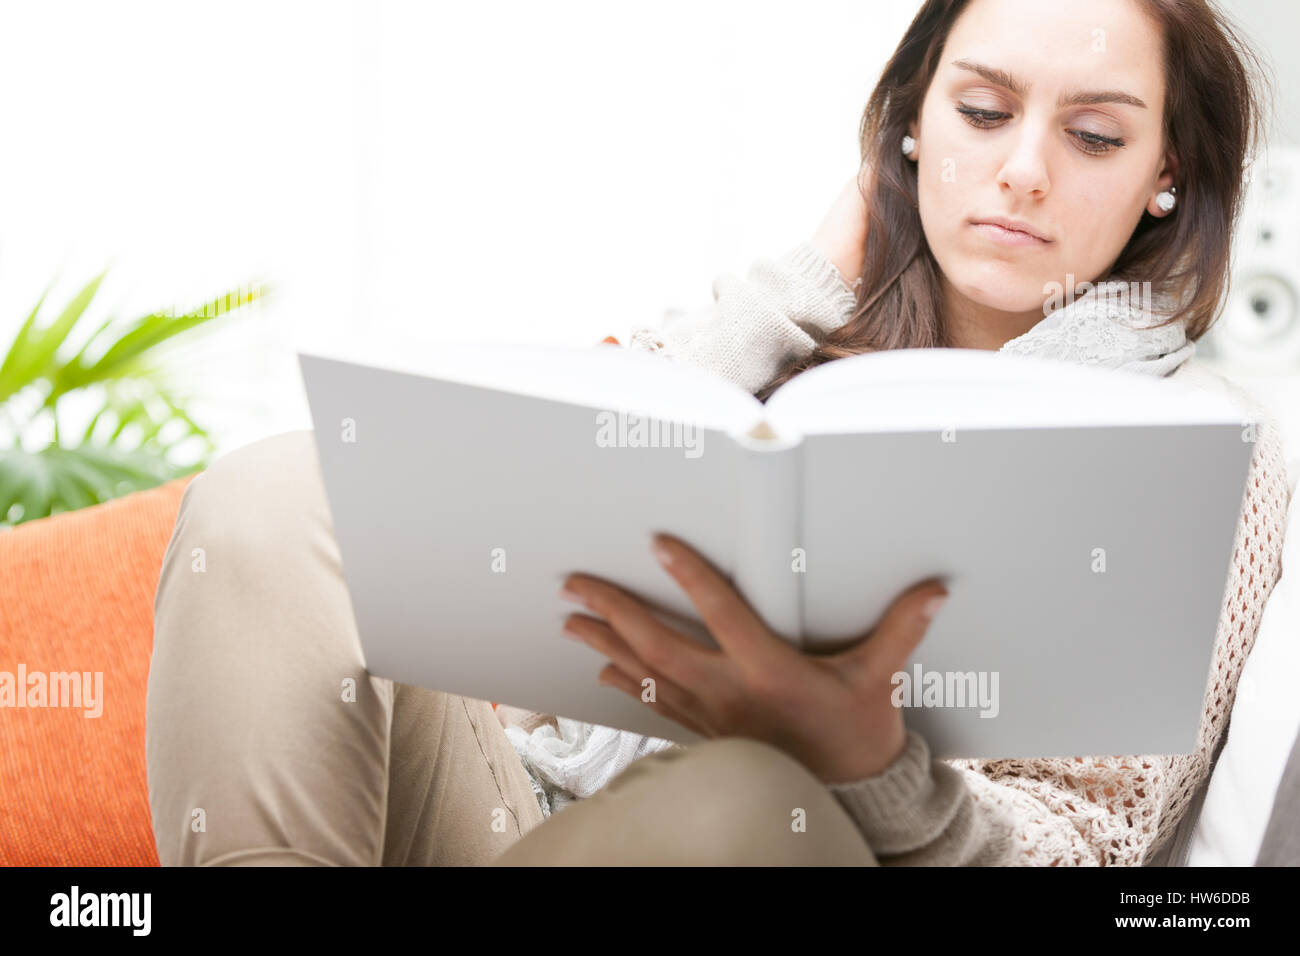 Belle Jeune femme lisant un livre relié pour les loisirs ou d'études avec une grave expression grossoyée, Close up sur le livre Banque D'Images